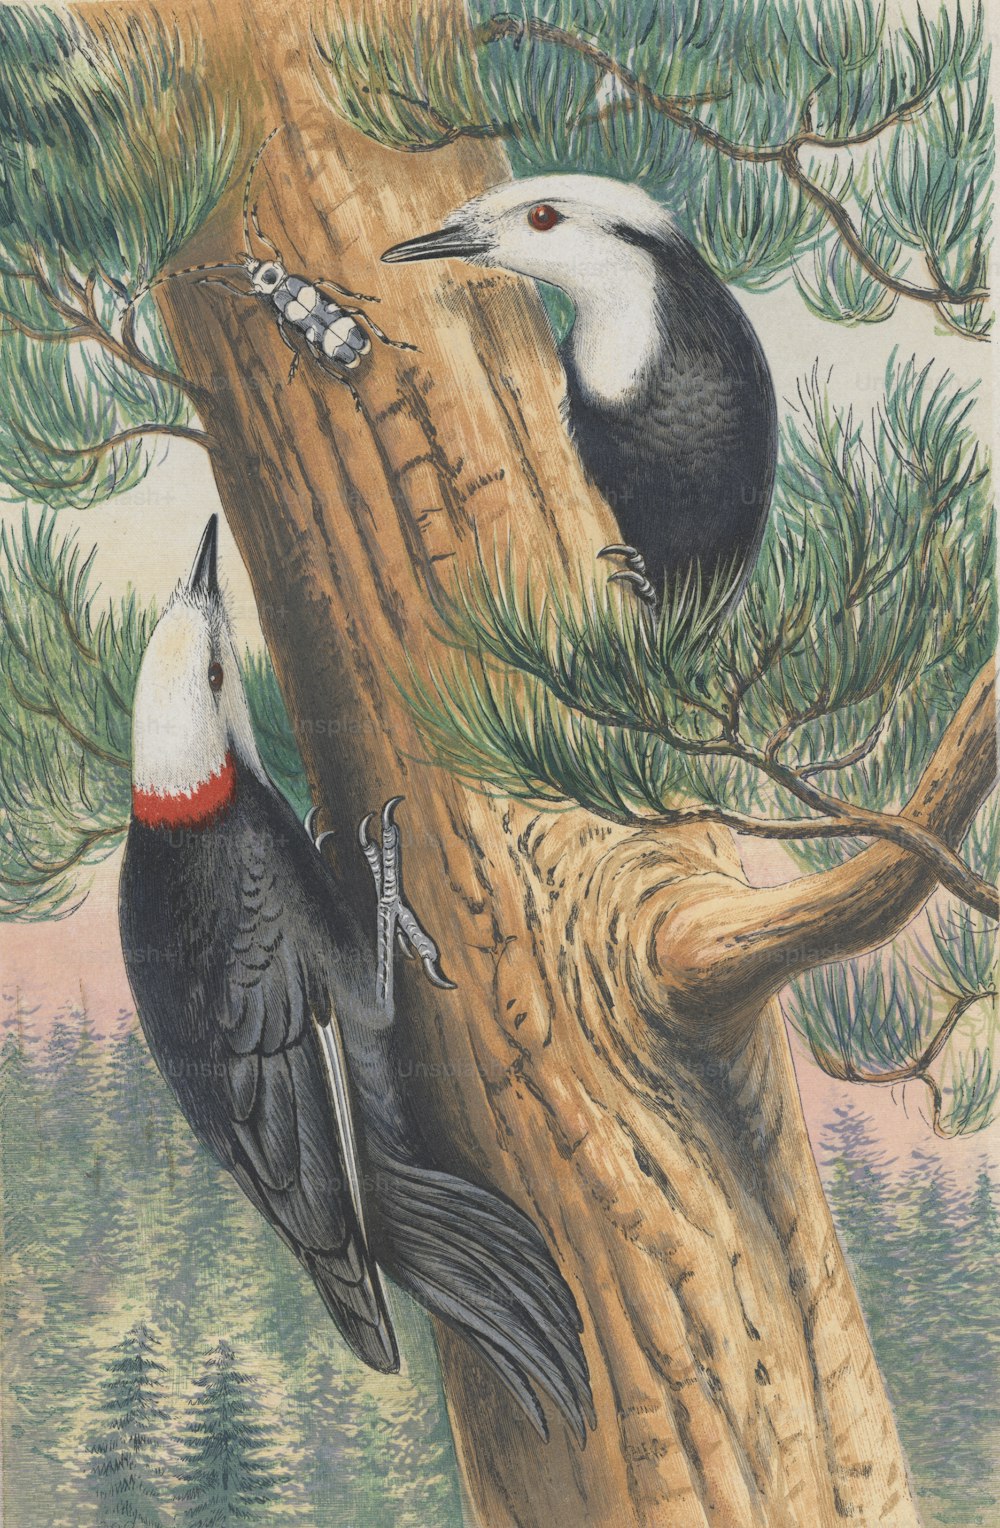 Dos pájaros carpinteros de cabeza blanca (Picus o Picoides albolarvatus) buscando insectos, alrededor de 1850. Grabado por Baird según T. W. Wood. (Foto de Hulton Archive/Getty Images)